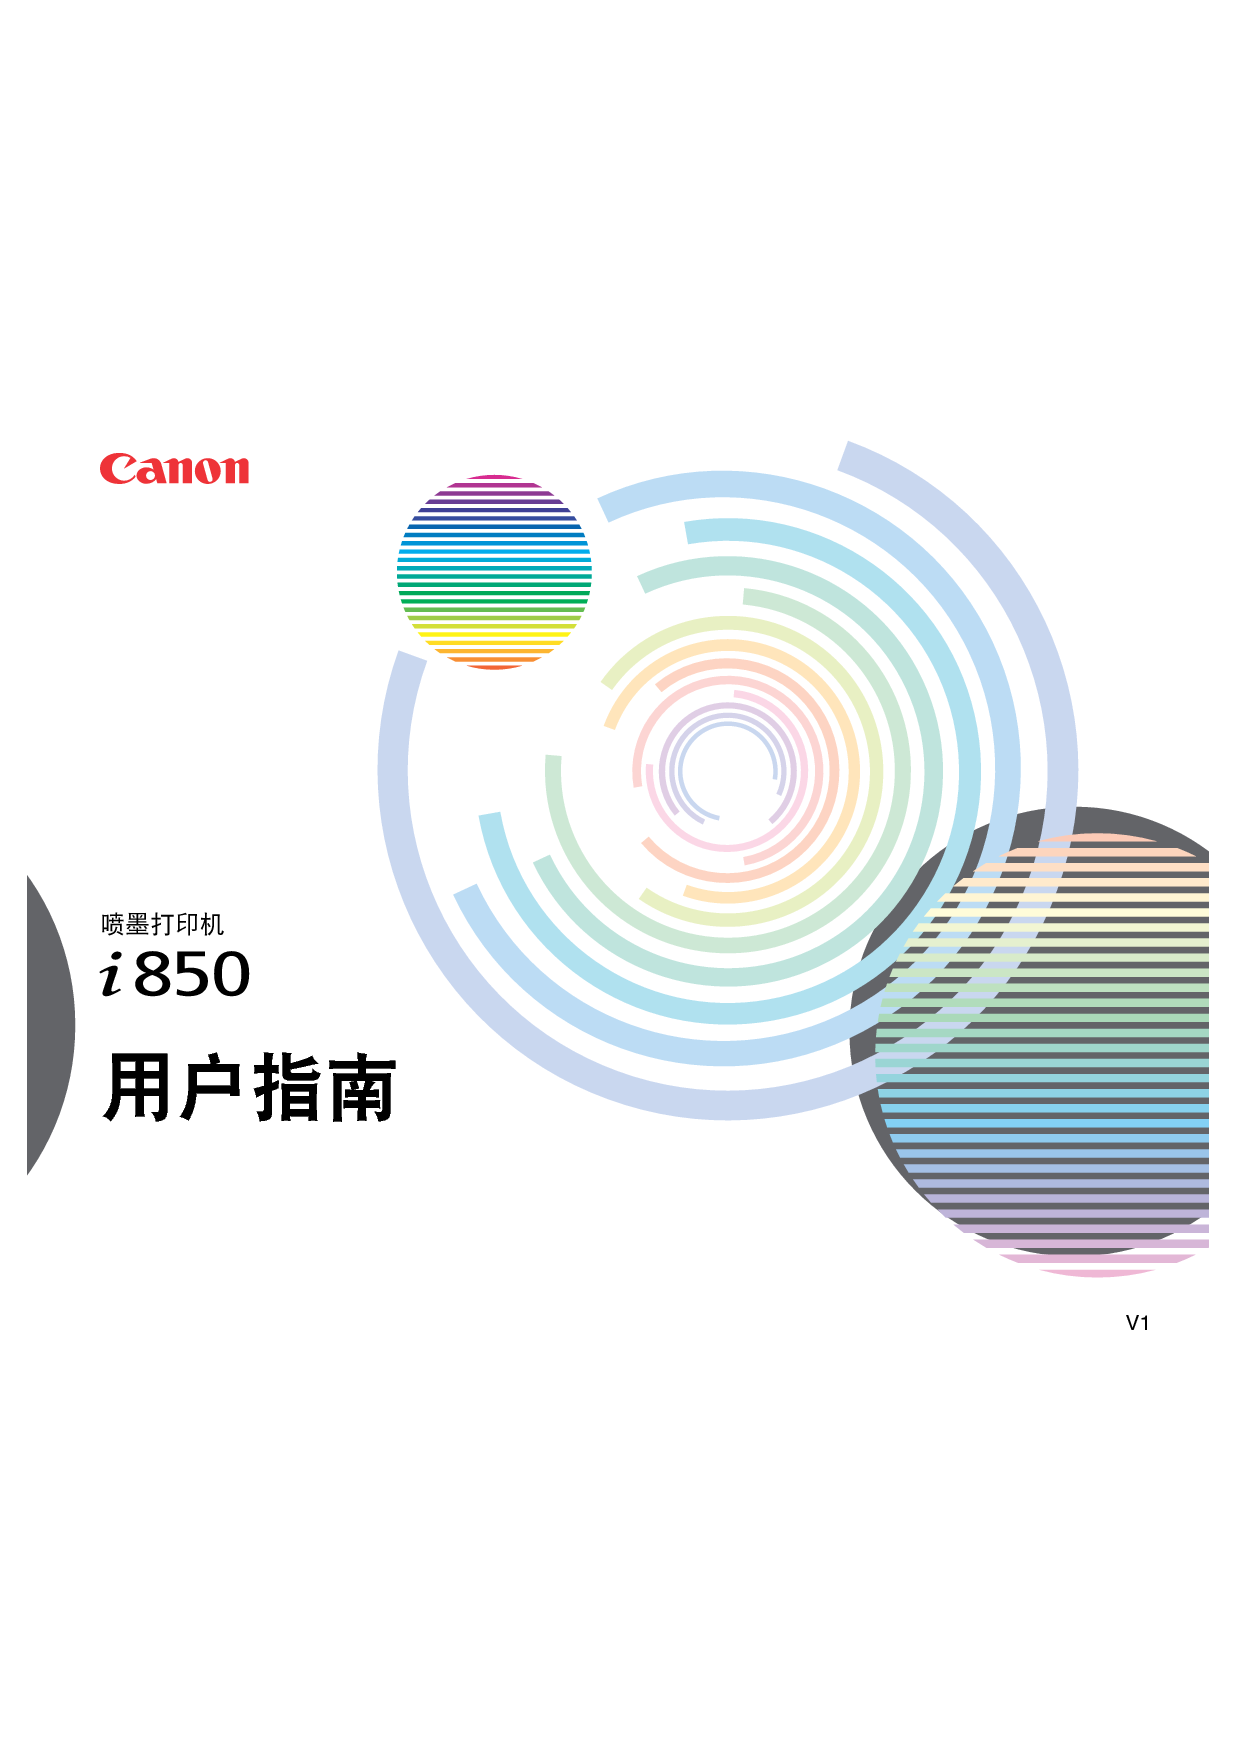 佳能 Canon i850 用户指南 封面